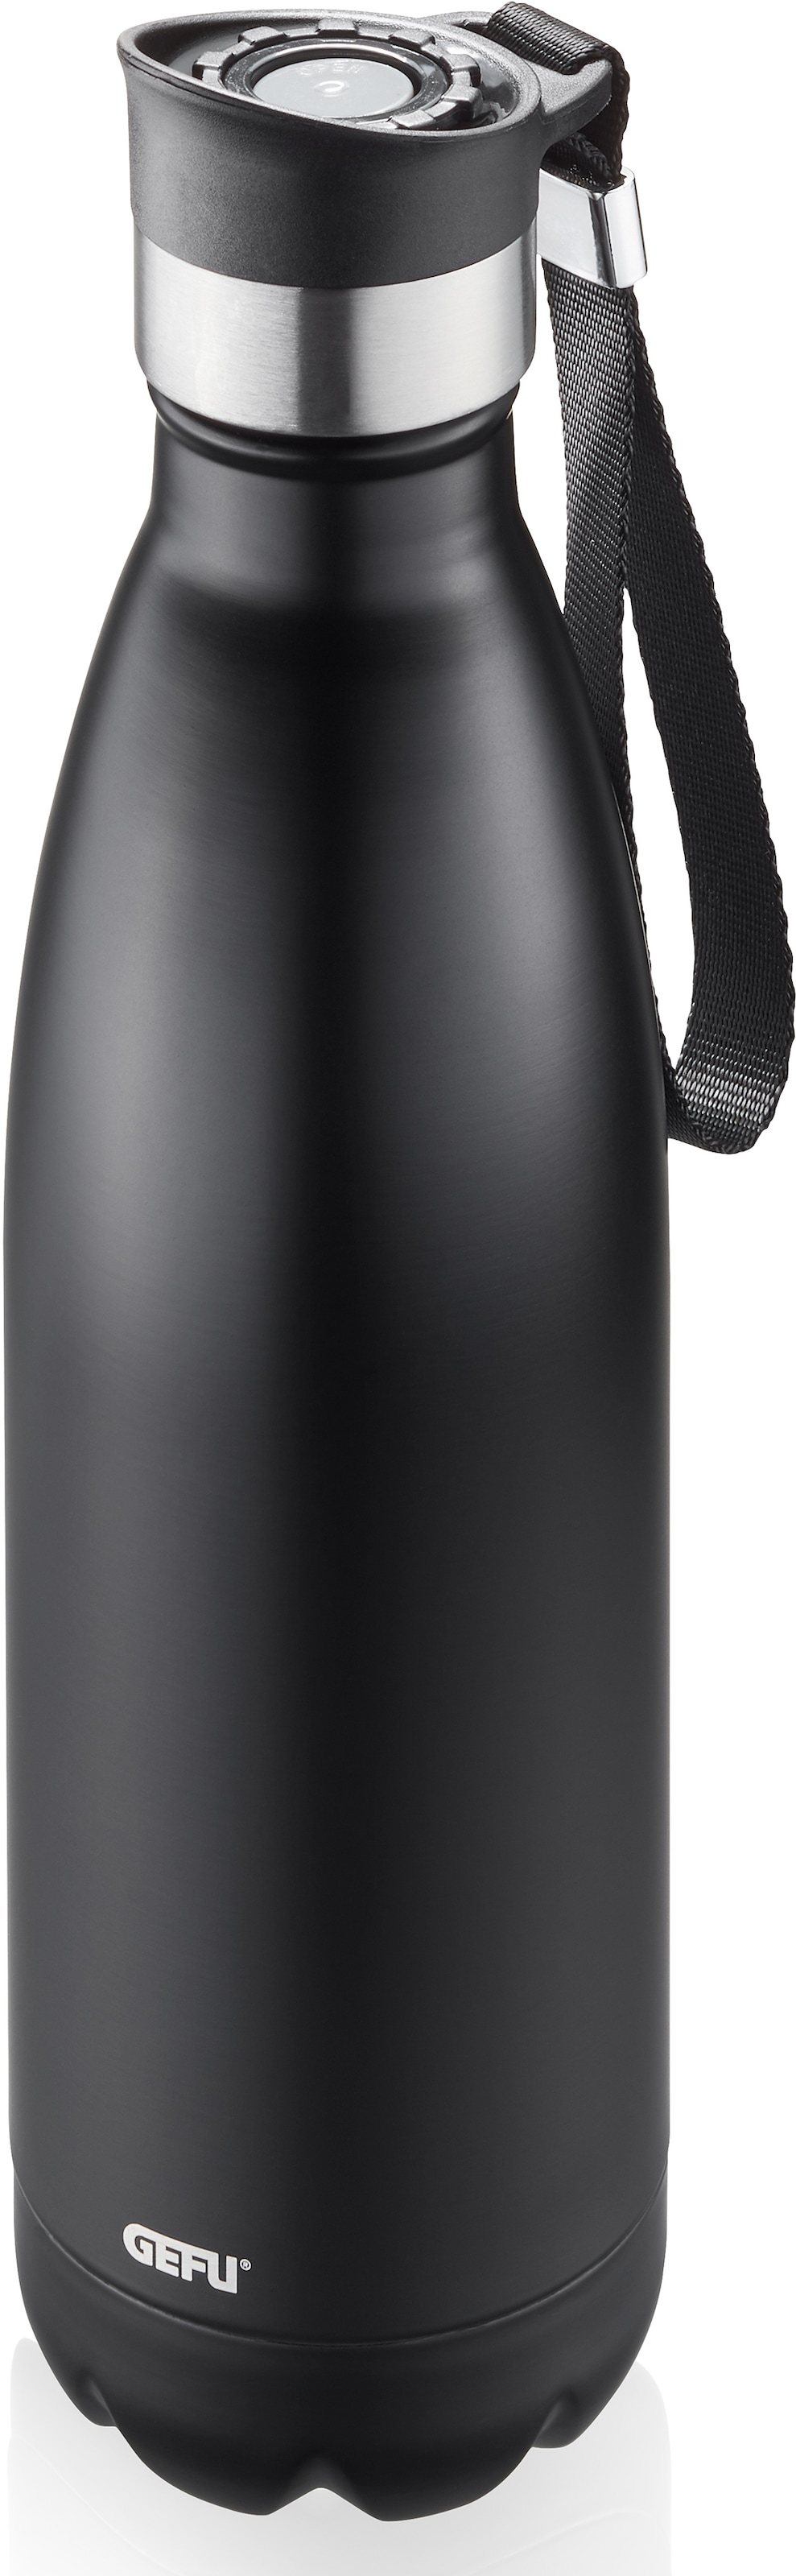 GEFU Thermoflasche "OLIMPIO", (mit Haltegurt), ideal für kohlensäurehaltige Getränke